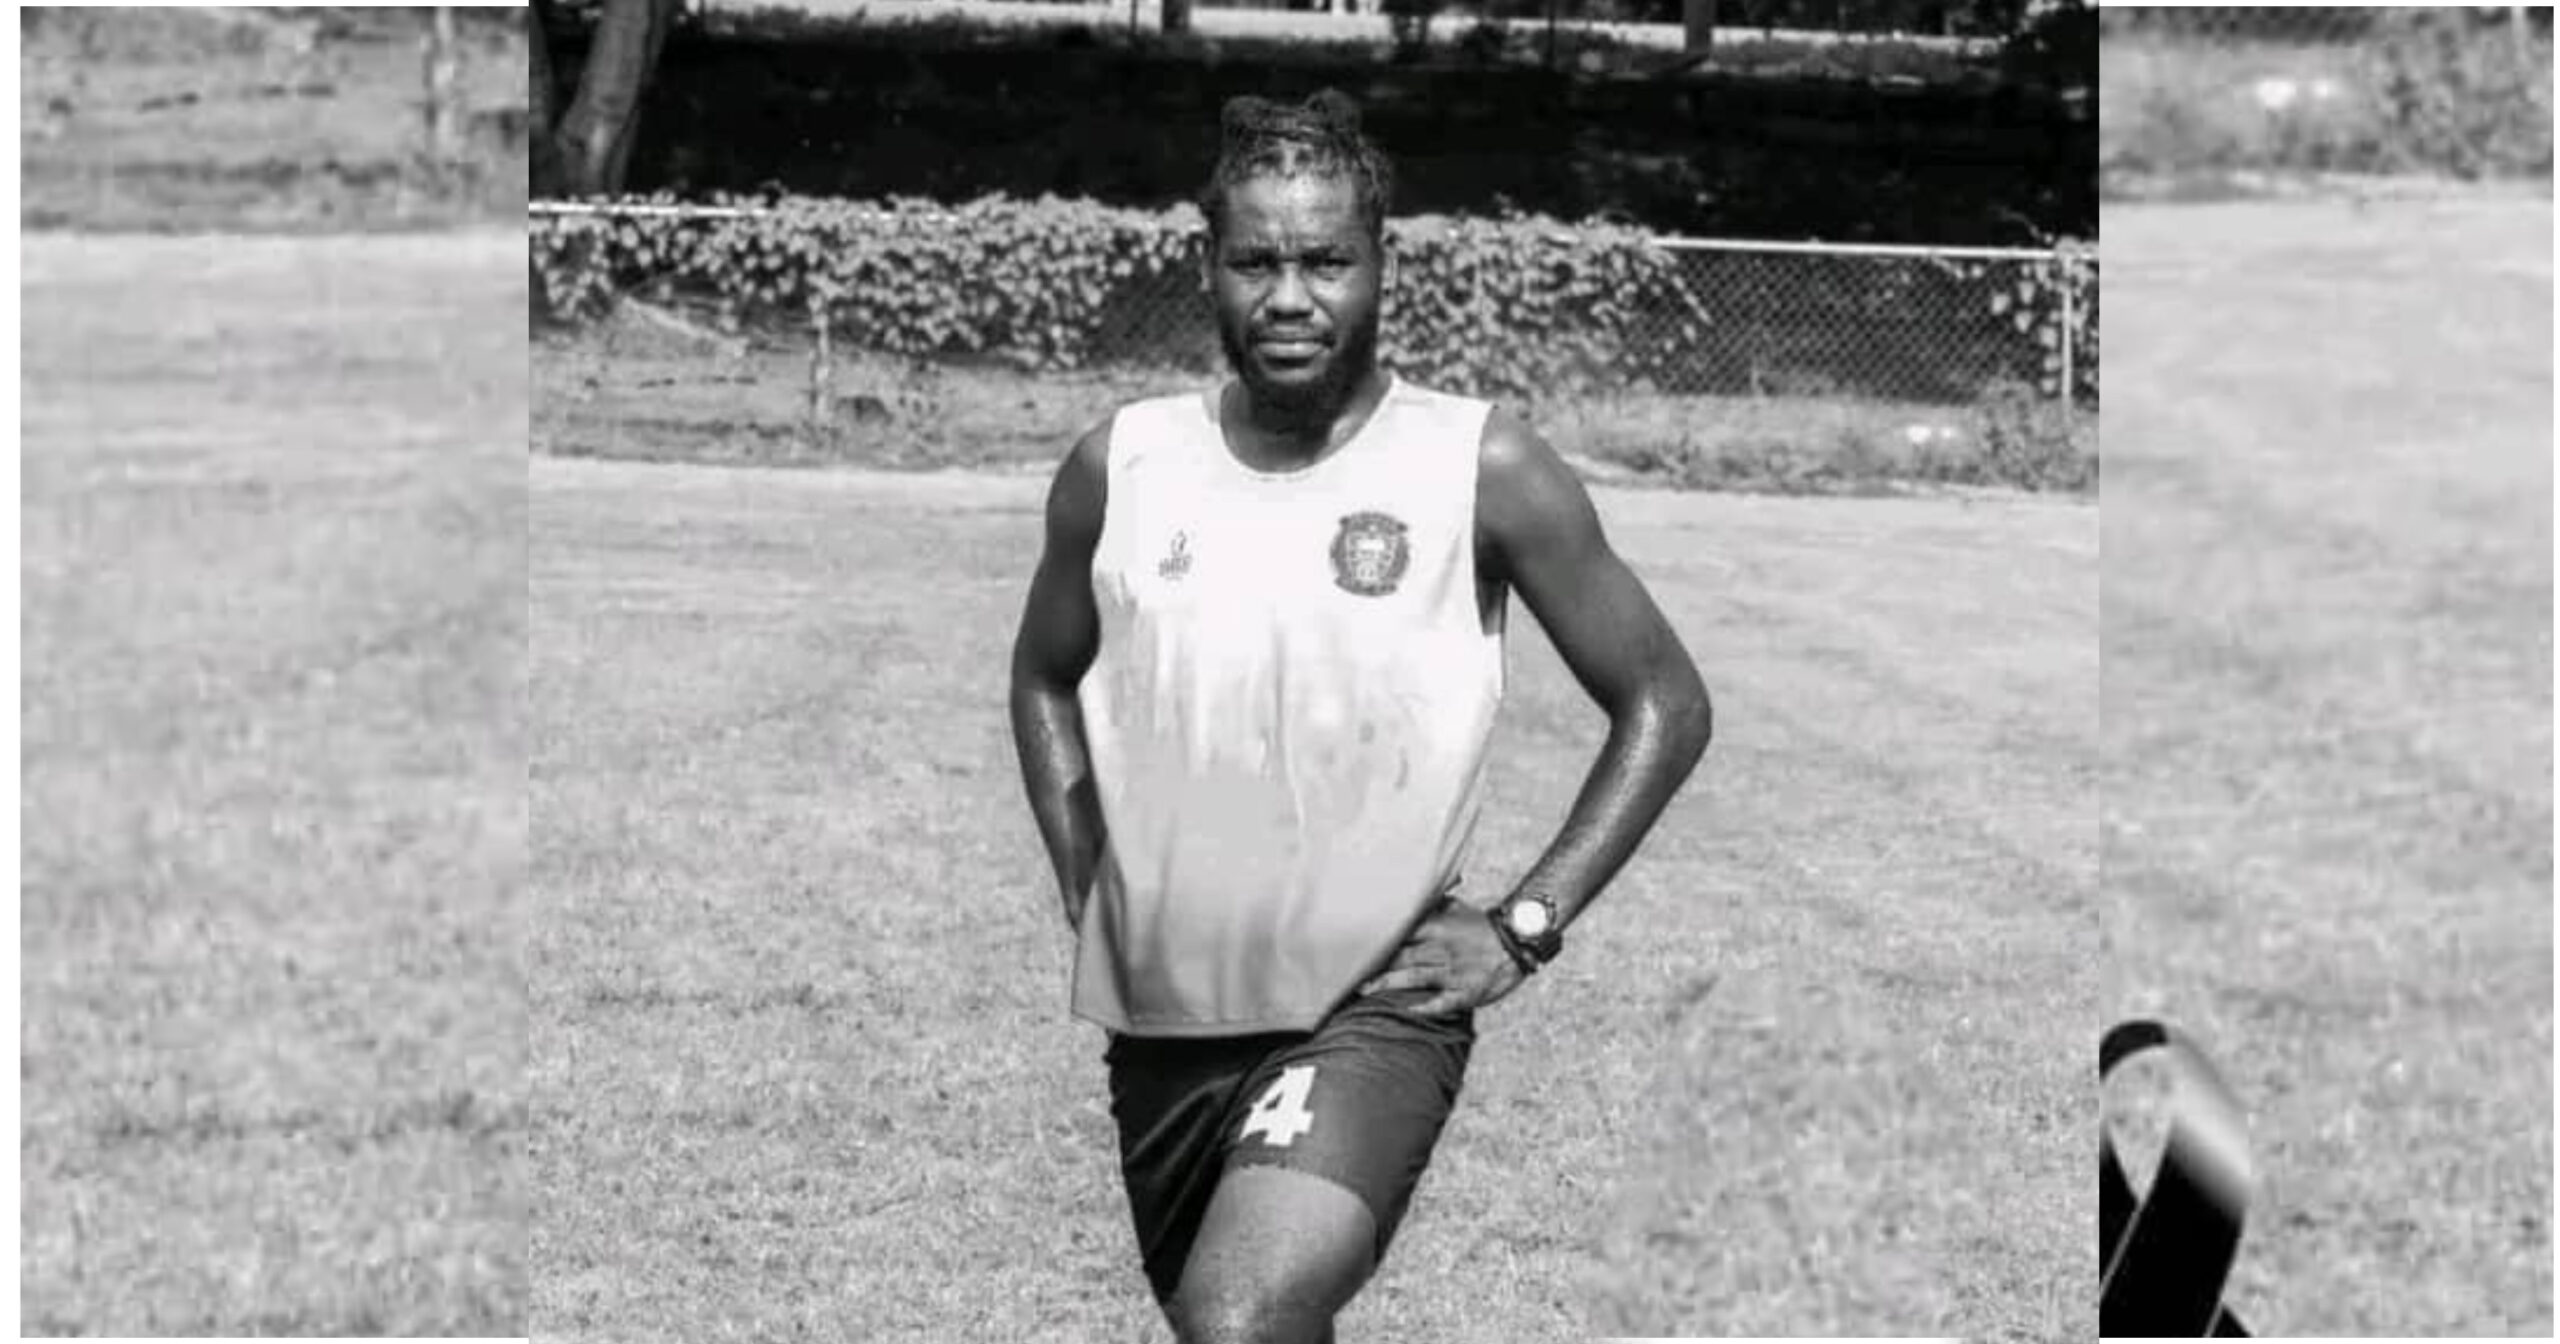 Le footballeur haïtien Olnick Alézy, victime d'un arrêt cardiaque, décède lors d'un match amateur